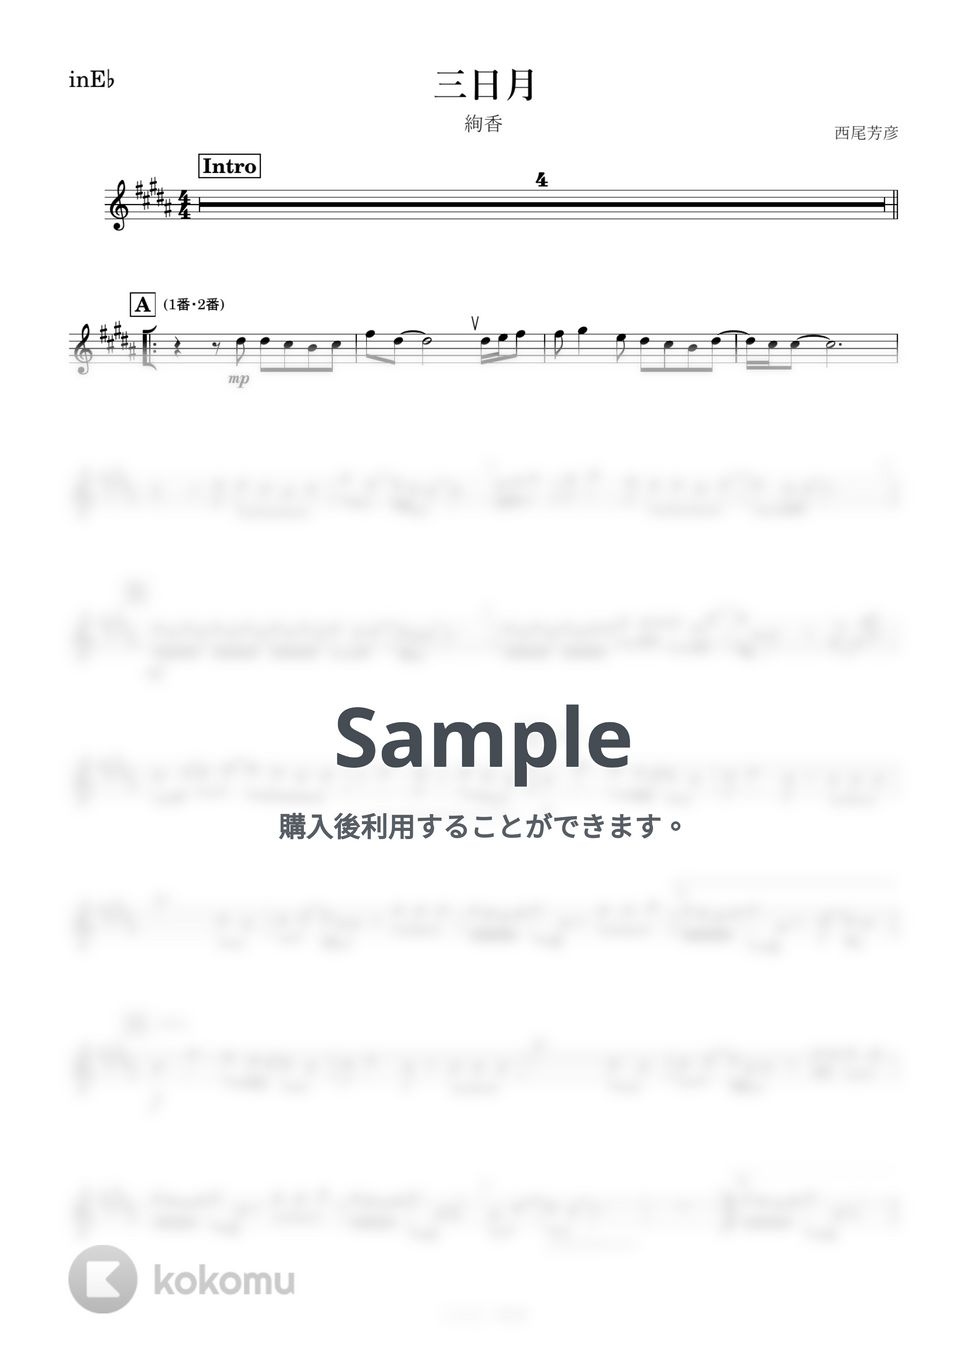 絢香 - 三日月 (E♭) by kanamusic